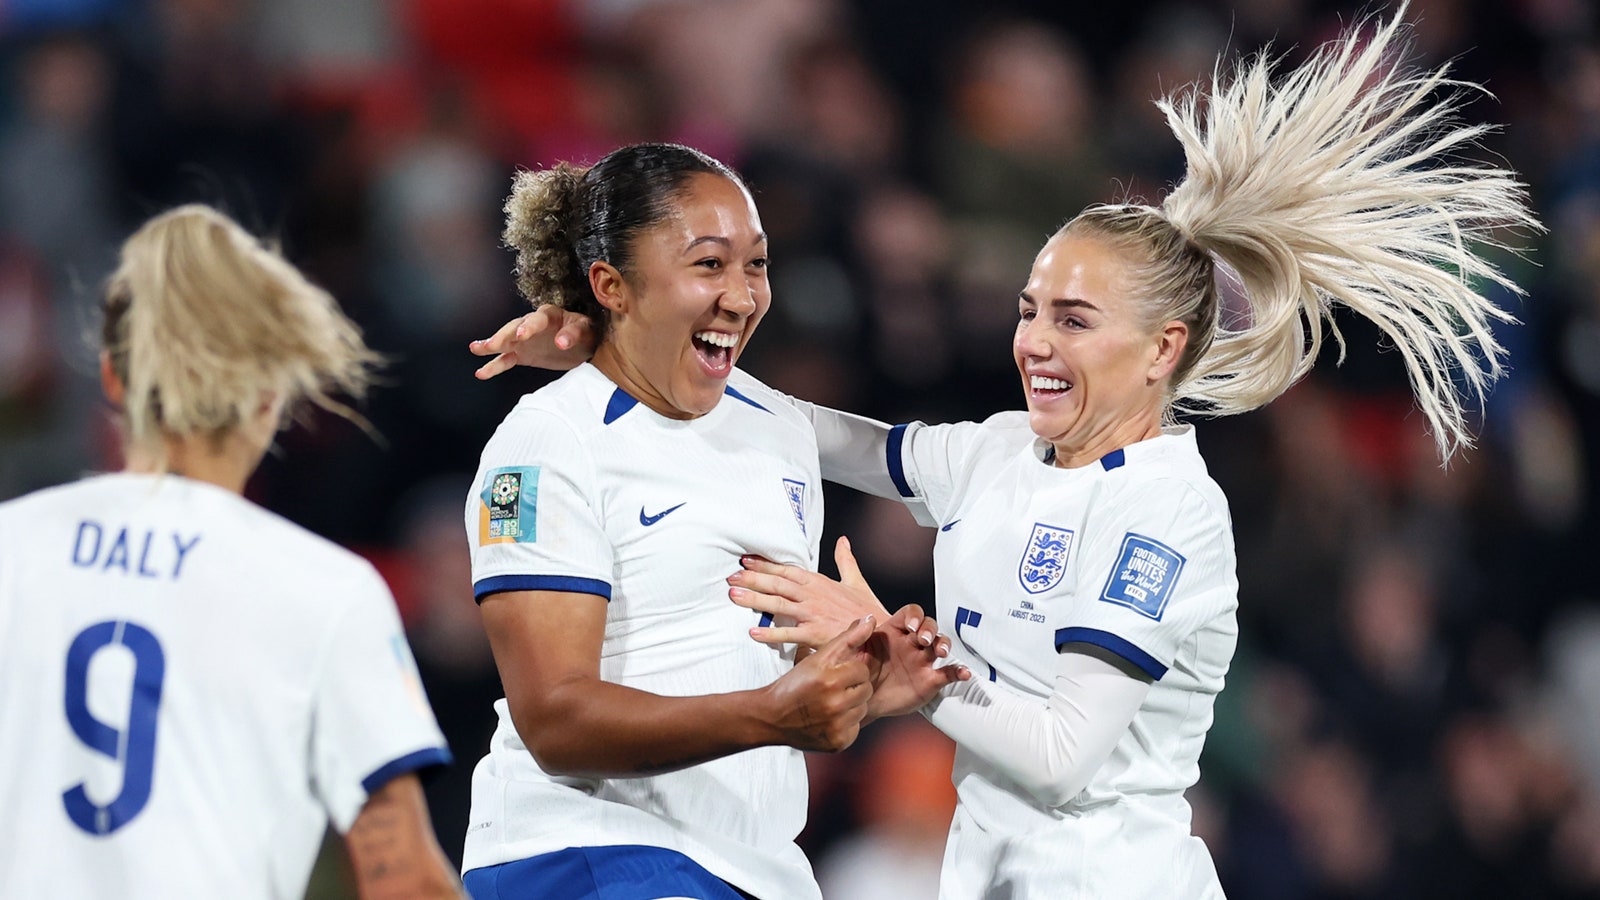 England's Lauren James scores goal vs. China in 65'